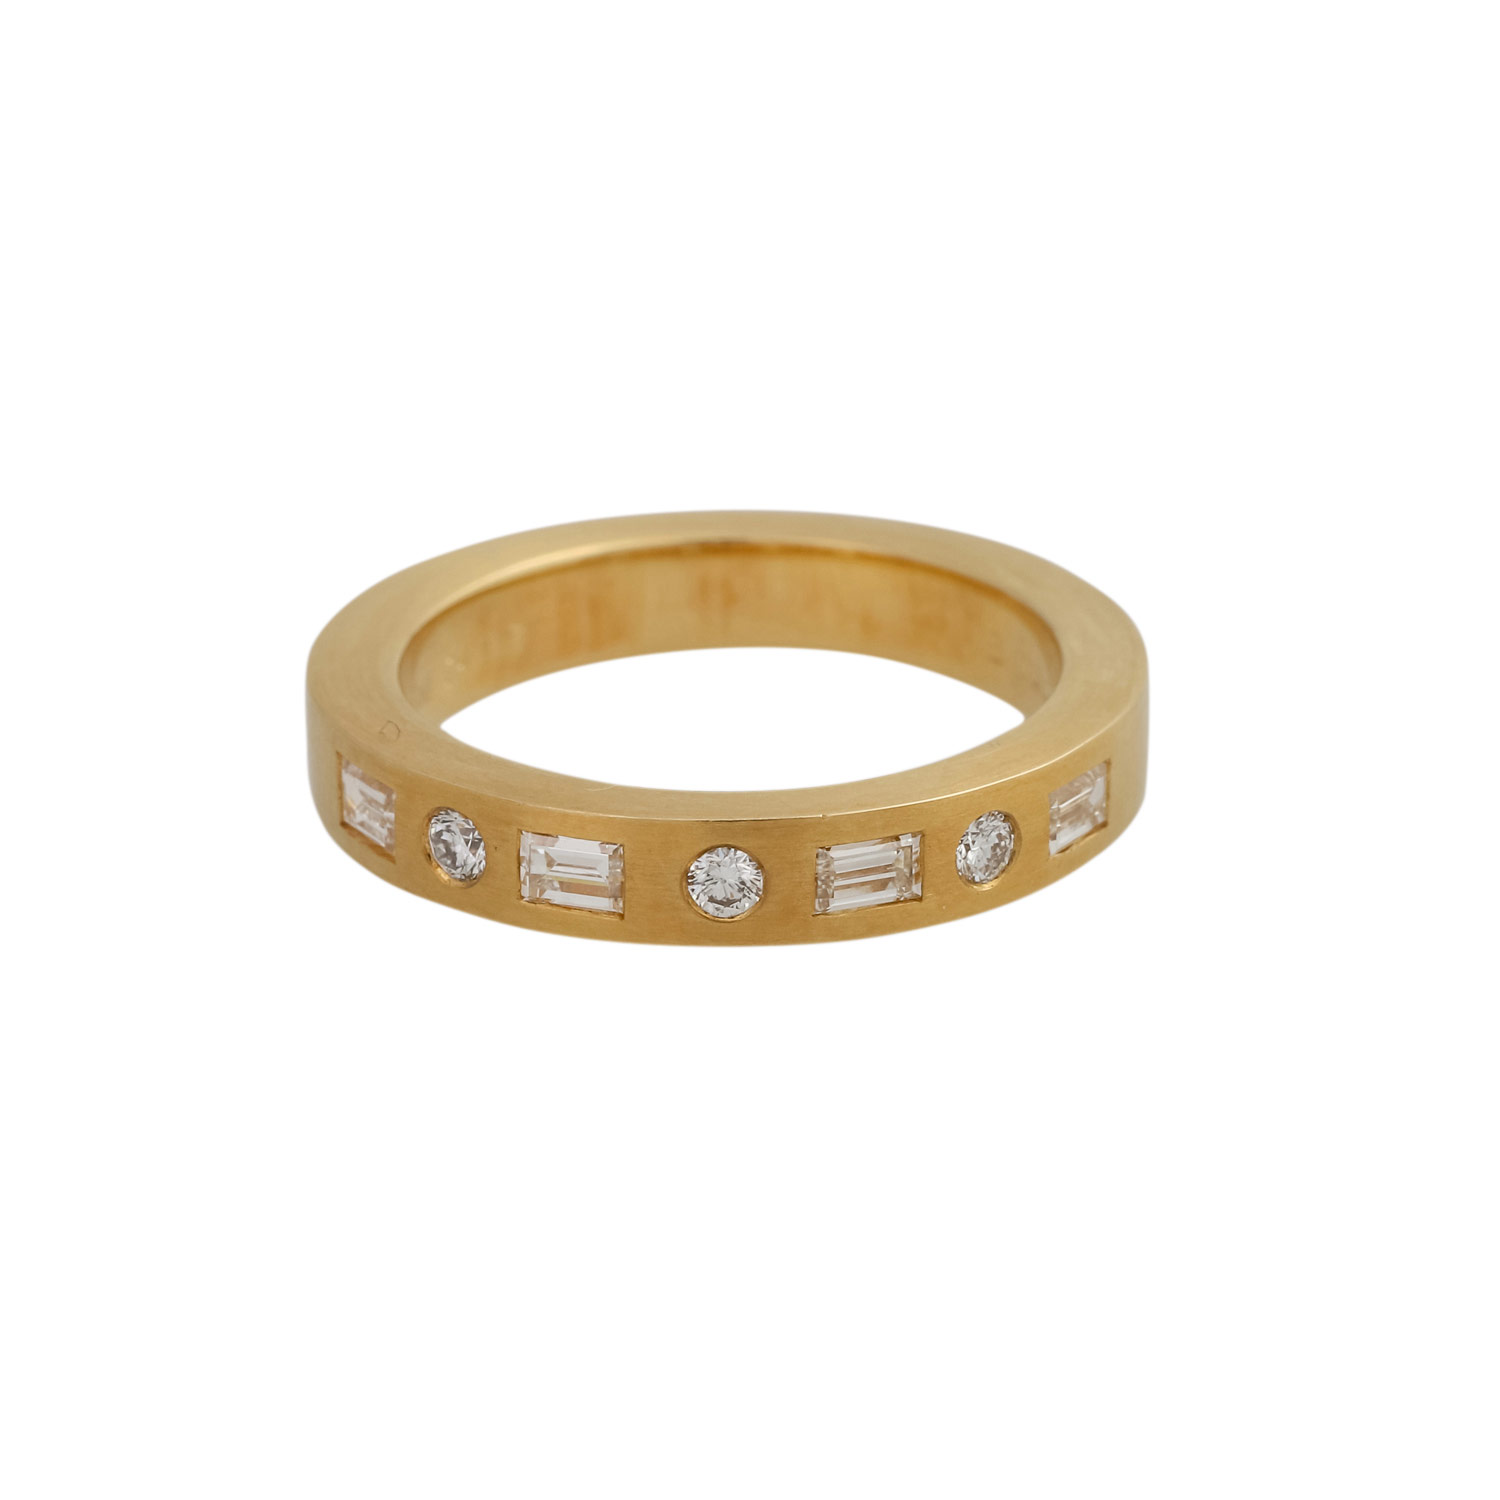 Ring mit 7 Diamanten, zus. ca 0,44 ct (punz.)FW-WEISS (G-H)/ VVS-SI, alternierend im Baguette- und